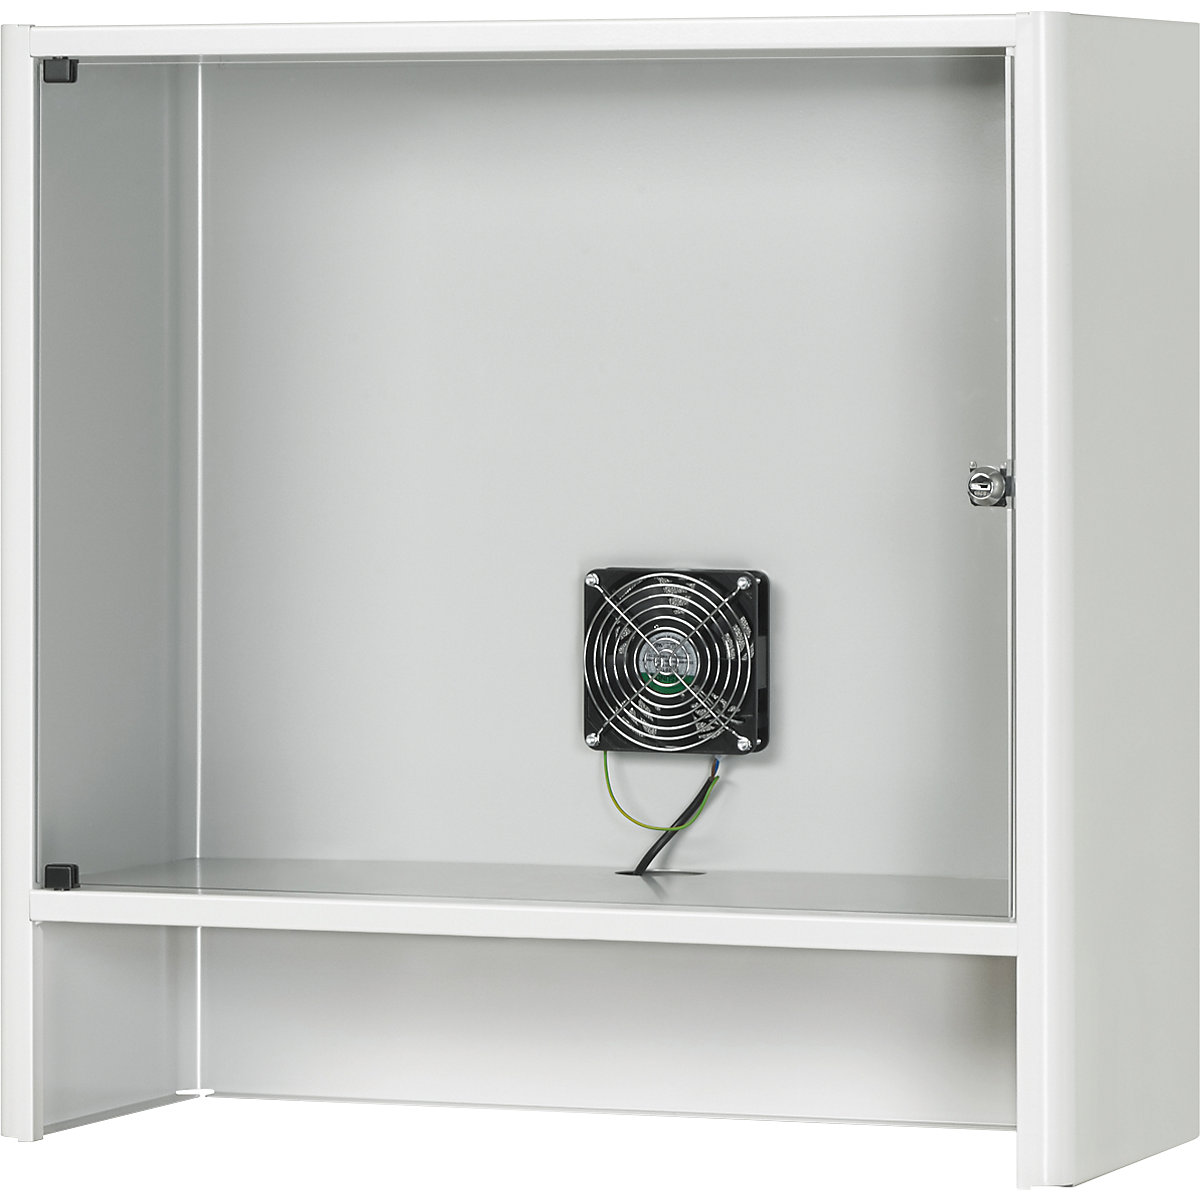 Monitorkast met geïntegreerde ventilator – RAU, h x b x d = 710 x 720 x 300 mm, lichtgrijs RAL 7035-3